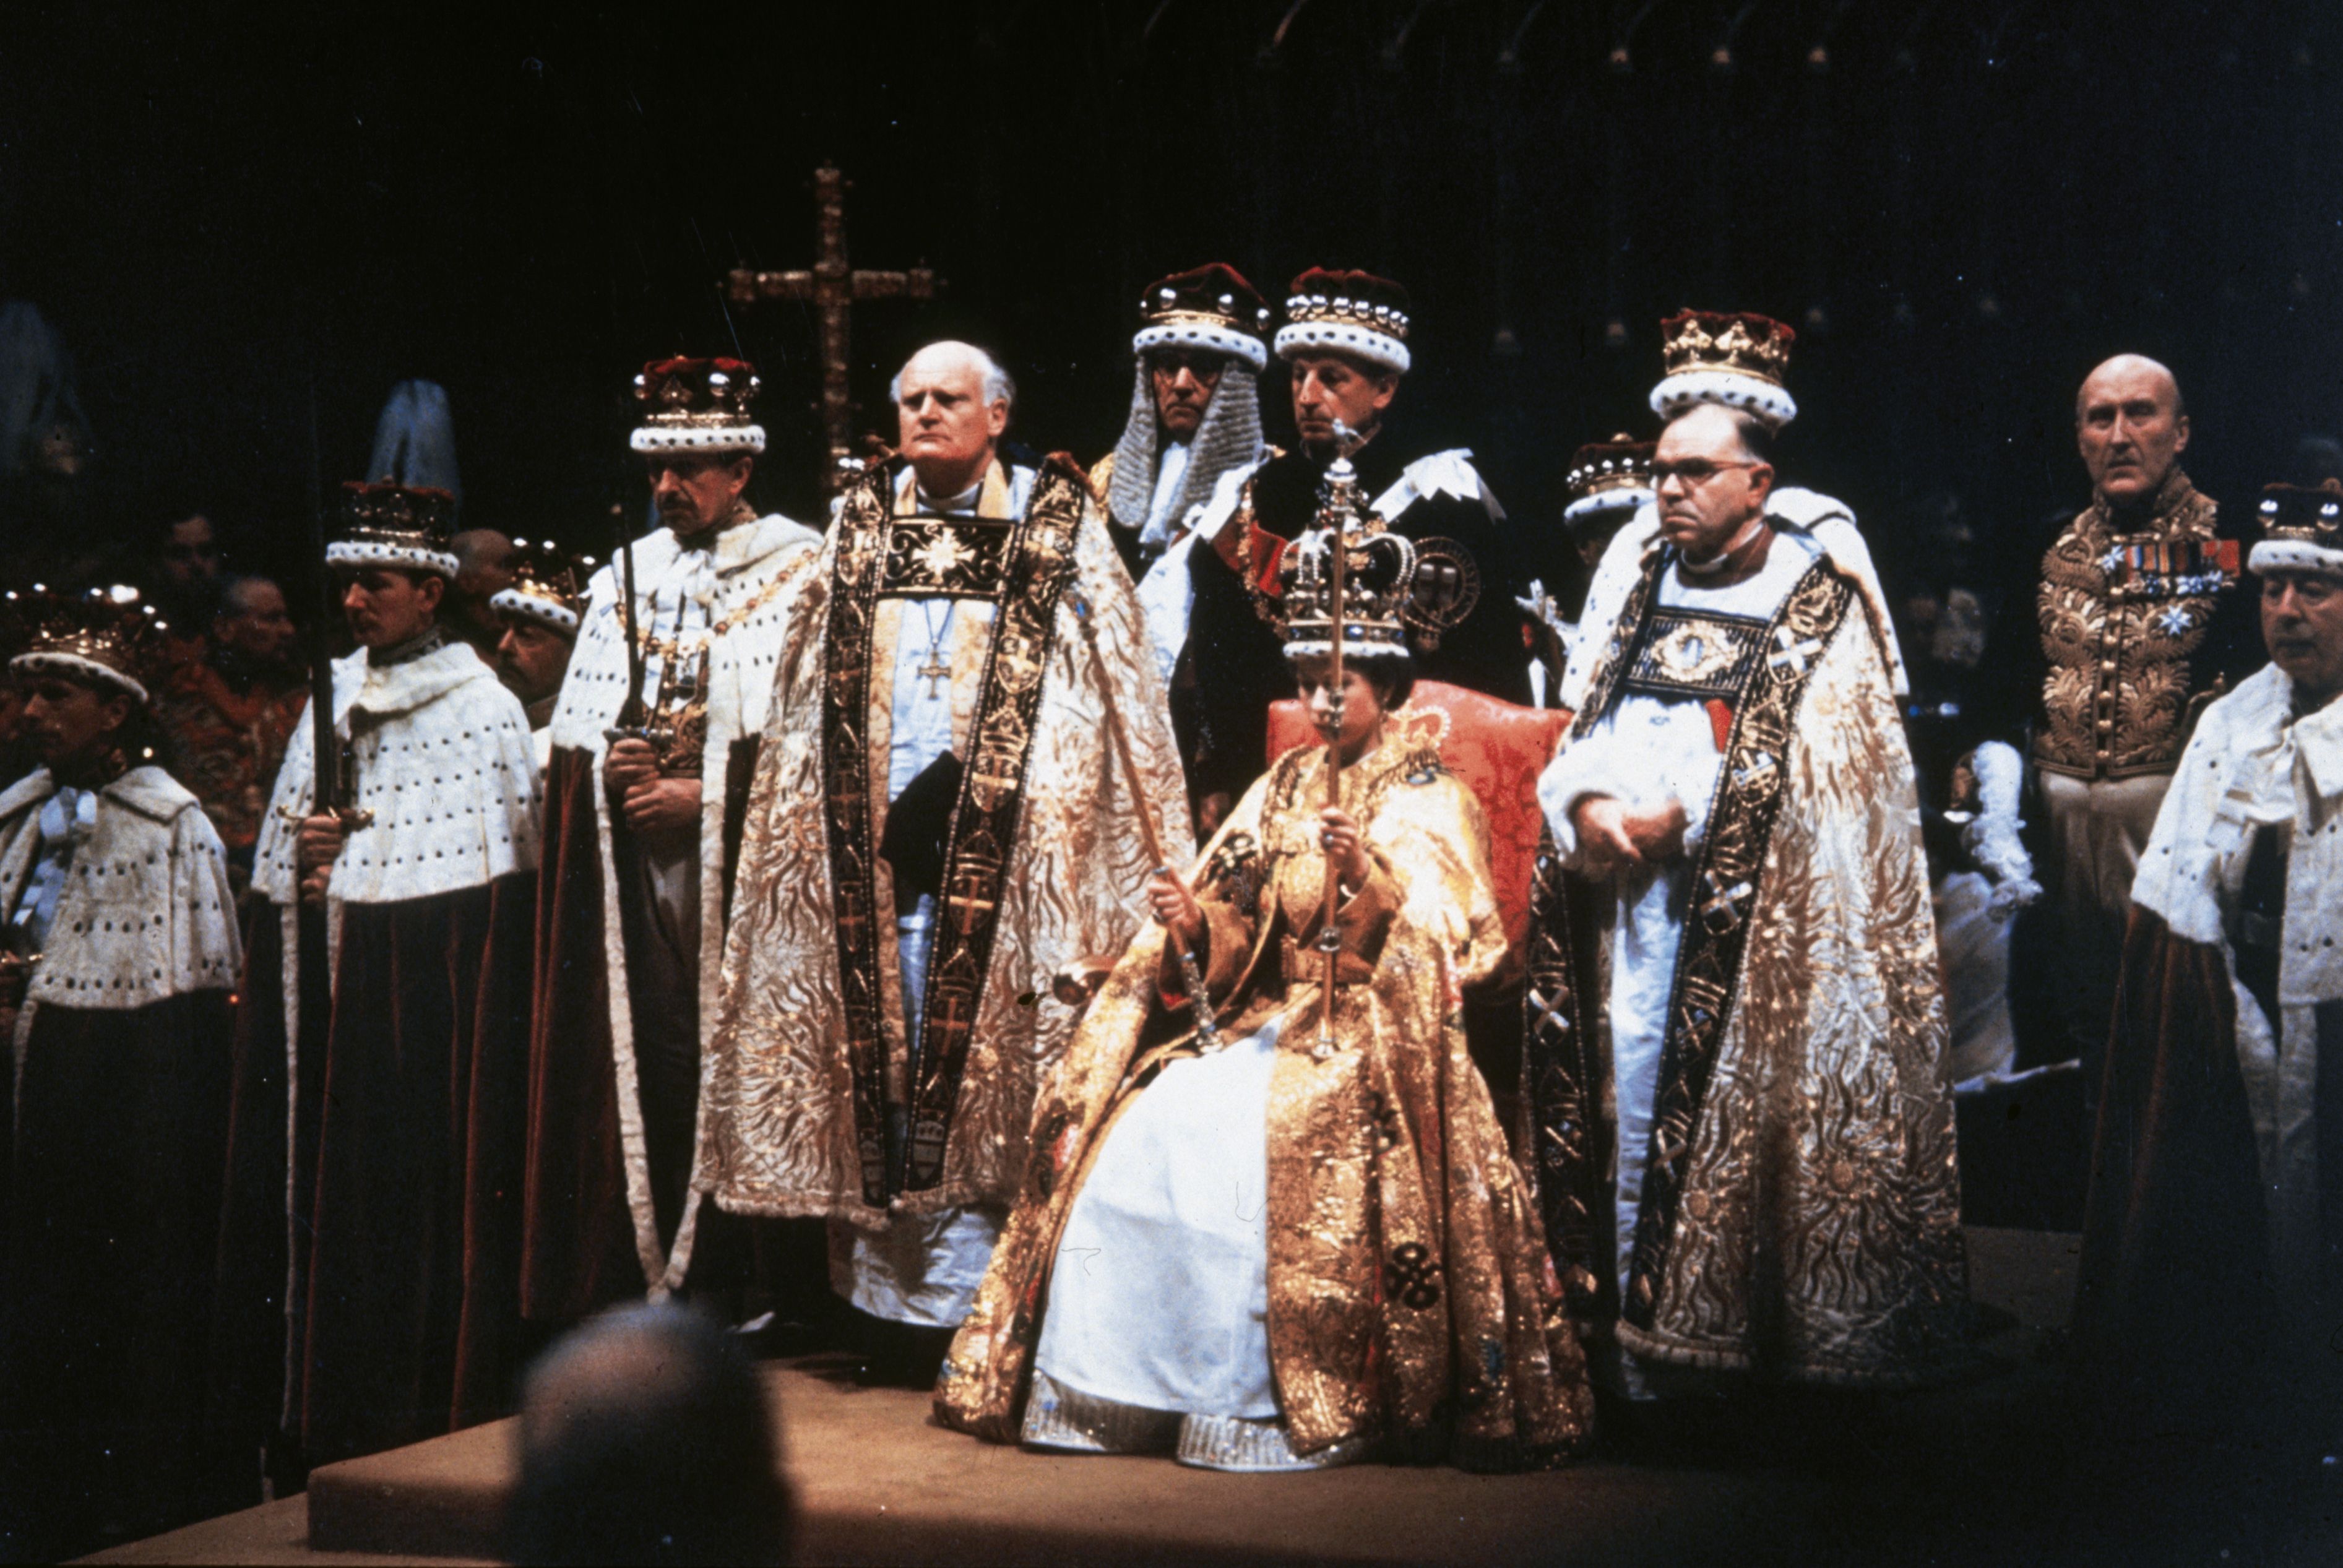 Queen Elizabeth's coronation was held in 1953.